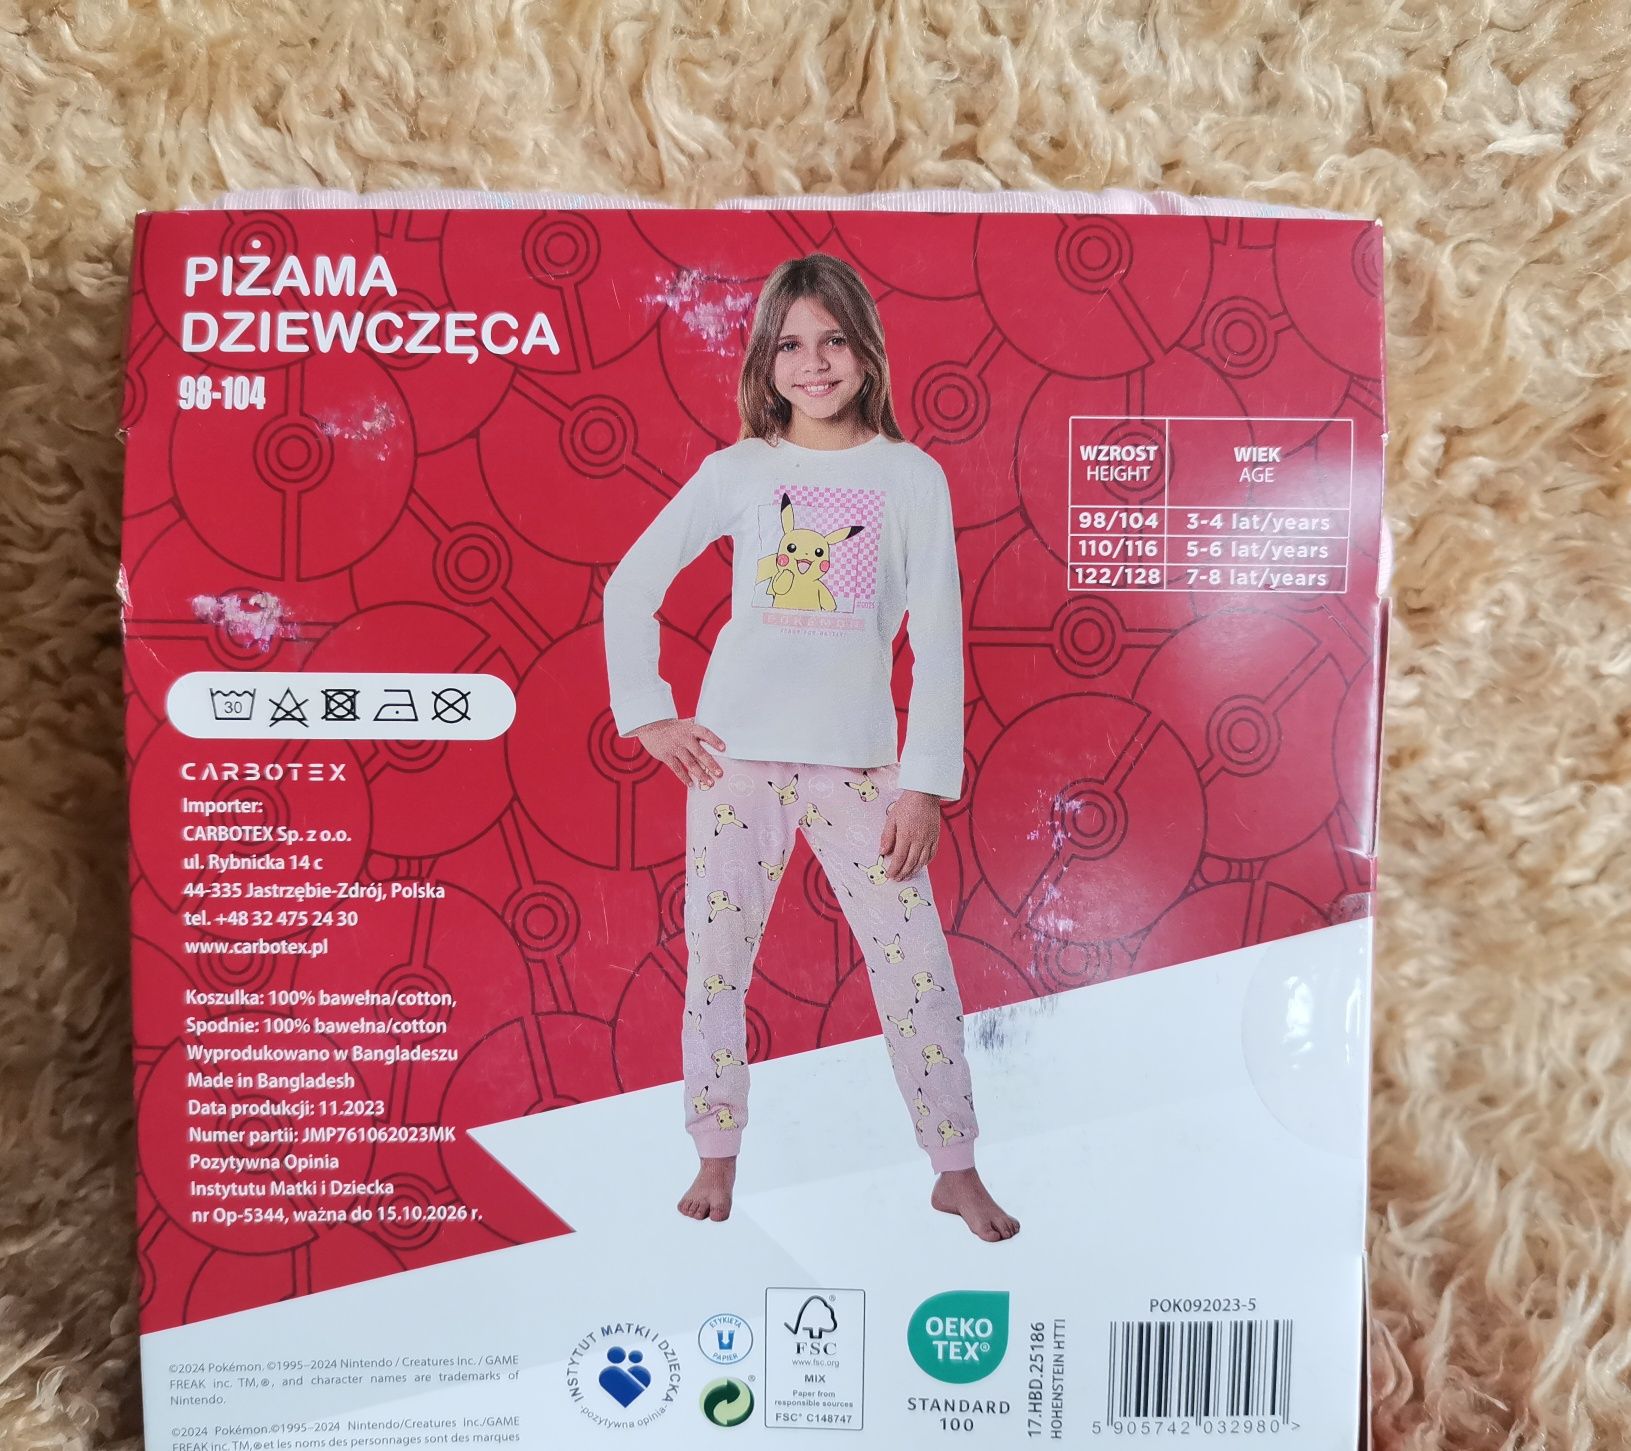 Piżama 98-104 dziewczęca dla dziecka dziewczynki Nowa